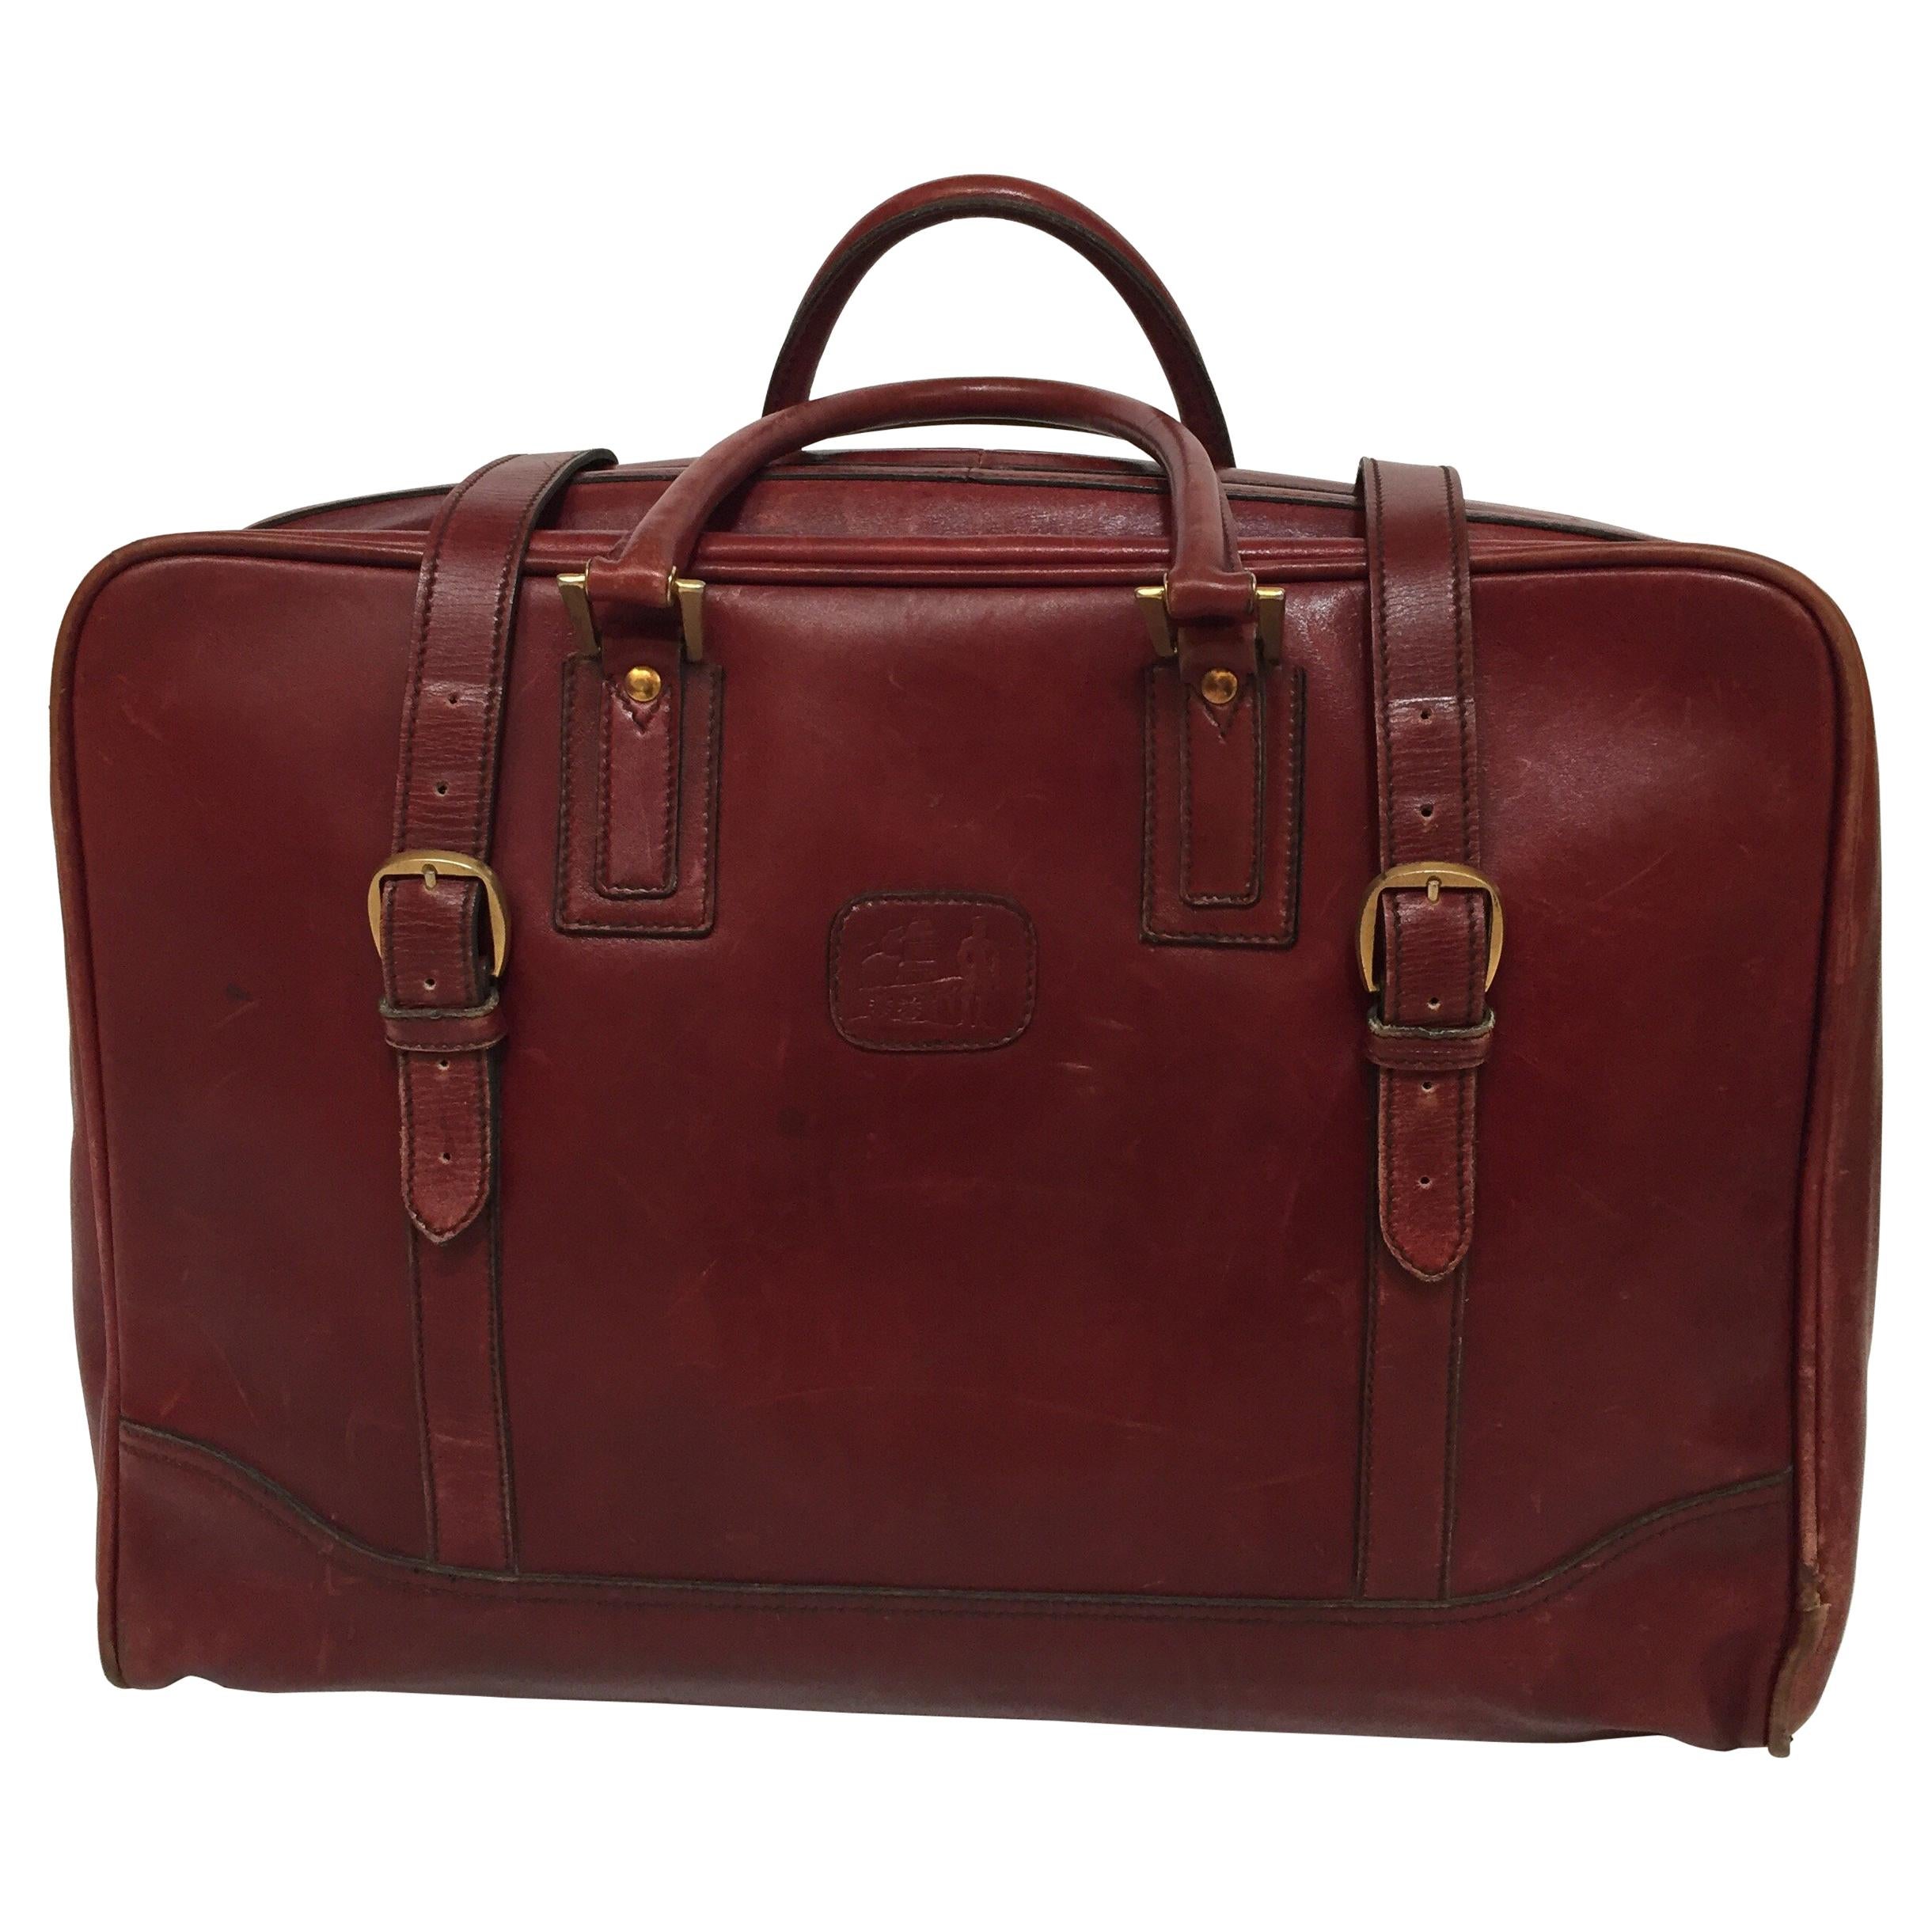 Vintage Leather Travel Bag "La Bagagerie Paris" Burgundy Bordeaux Luggage 1970